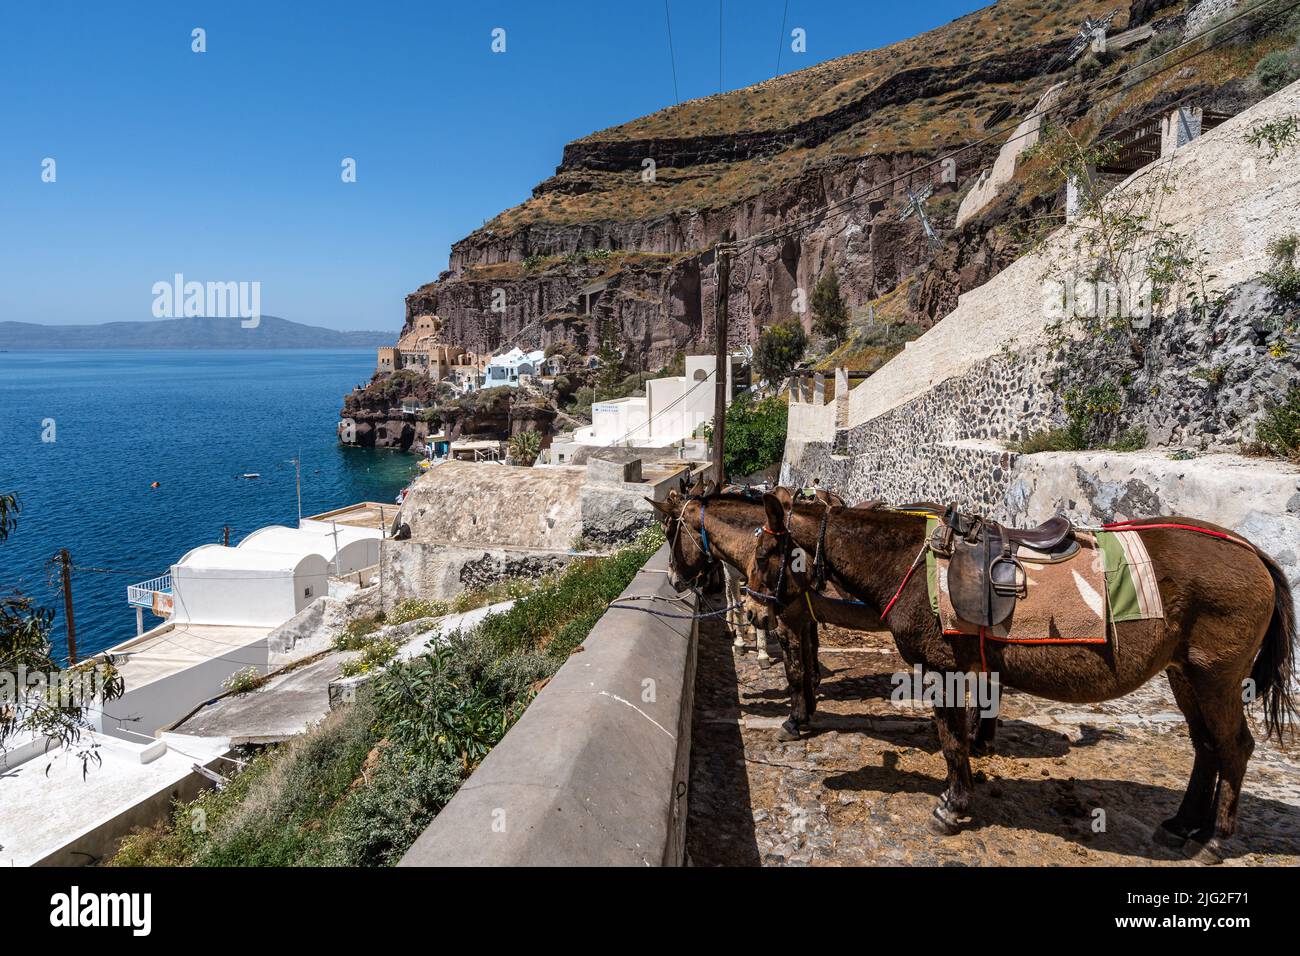 Asini in attesa di turisti a Santorini Island, Grecia. I taxi d'asino sono un'attrazione turistica tipica dell'isola. Foto Stock